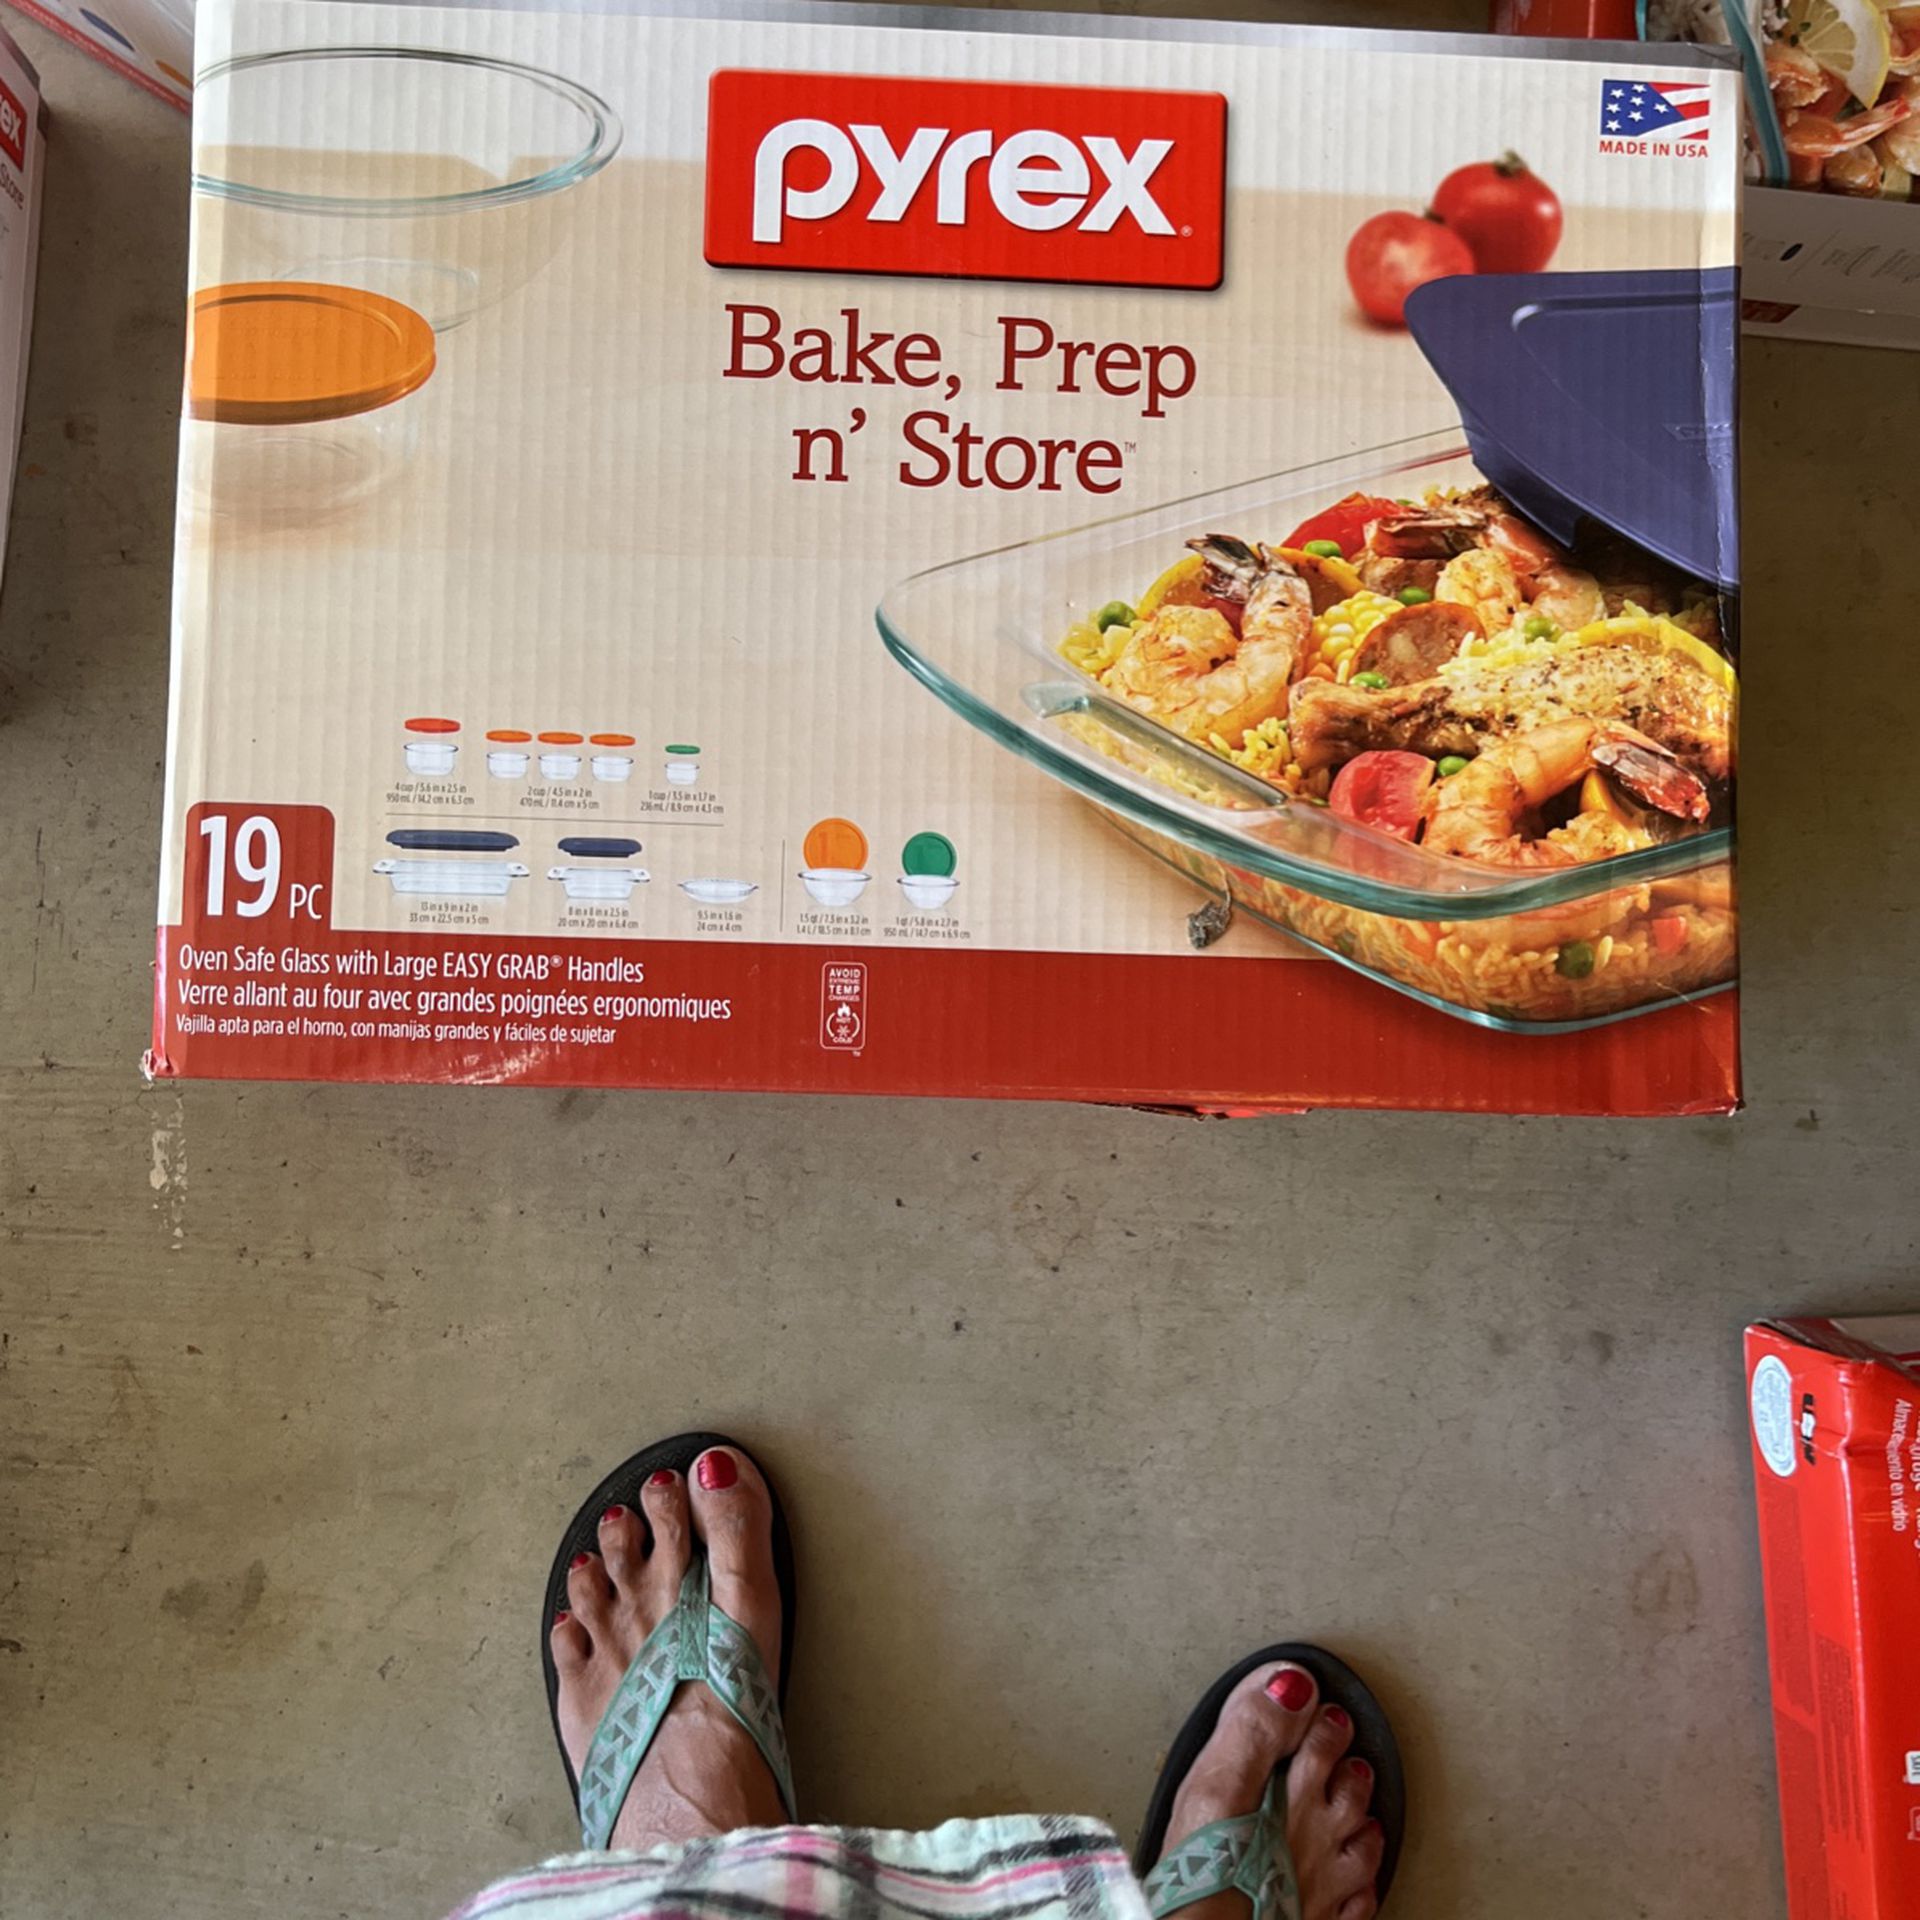 Pyrex Bake Prep n store